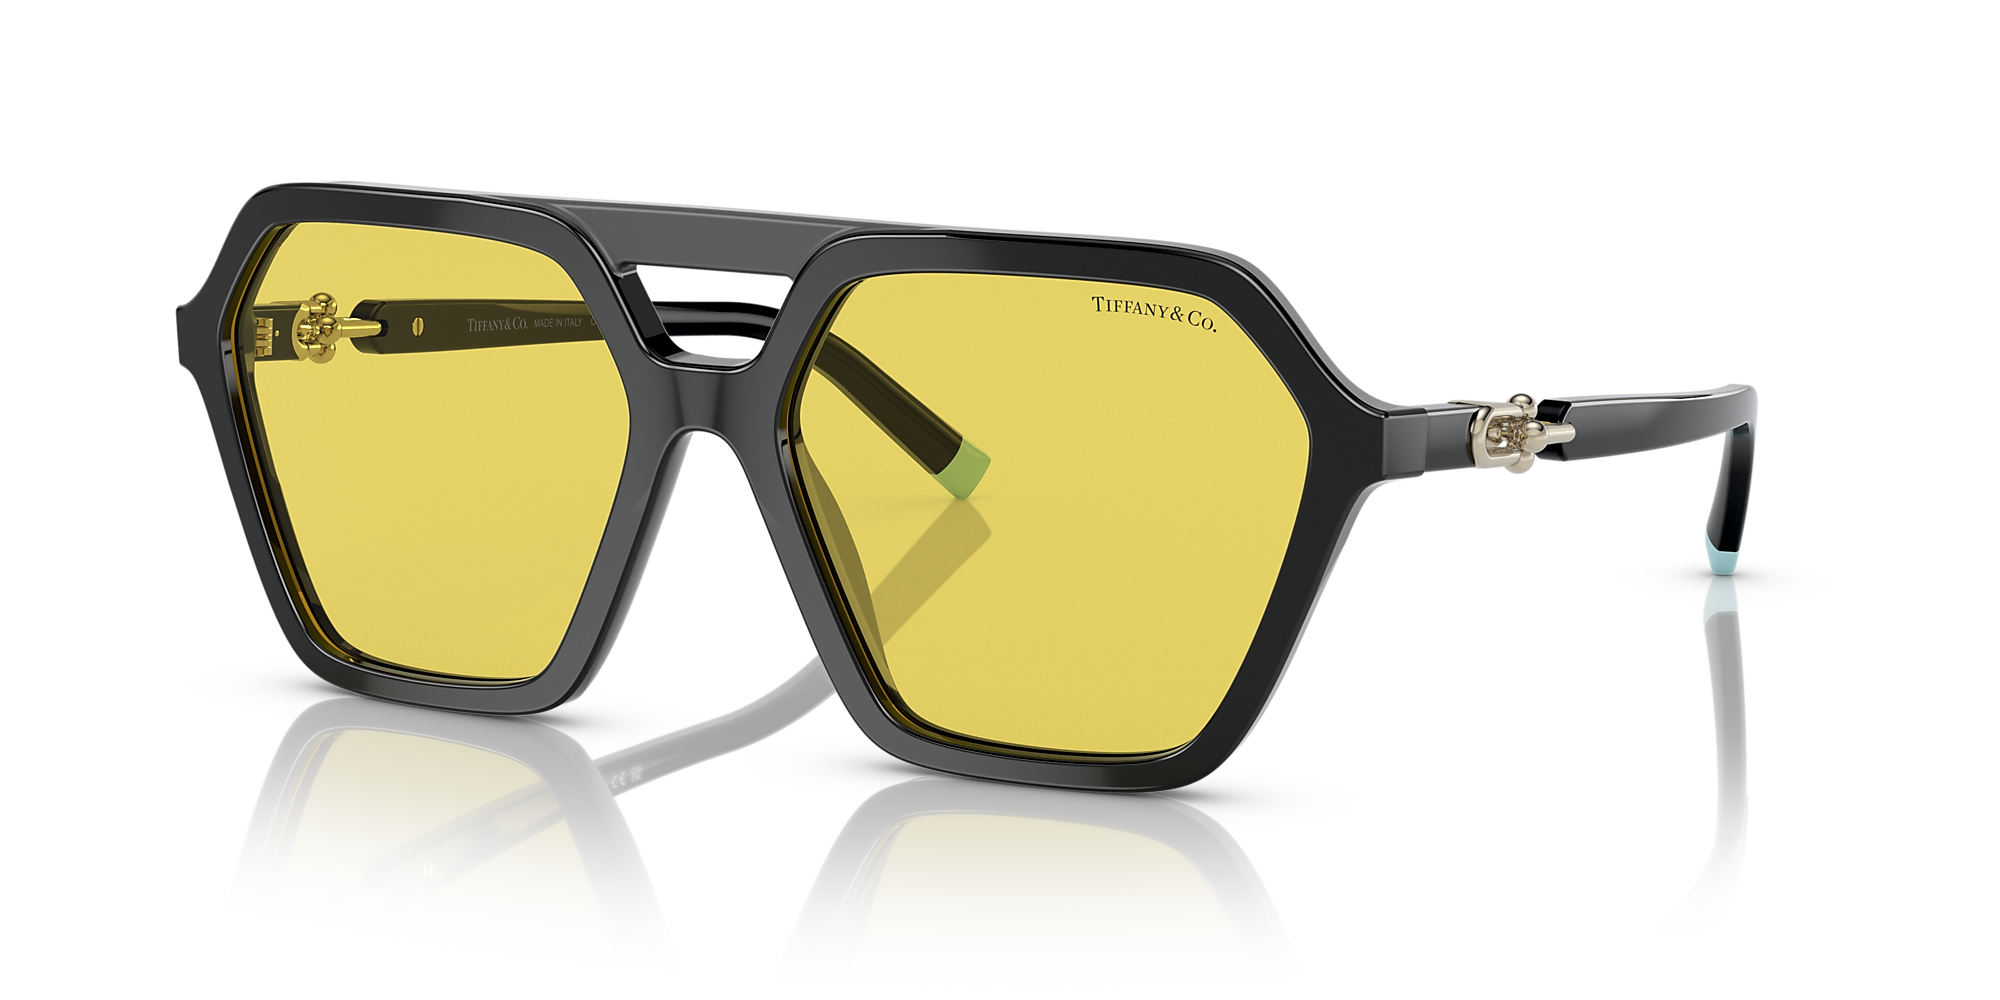 Tiffany & Co. TF4198 58 Yellow & Black Sunglasses | Sunglass Hut USA